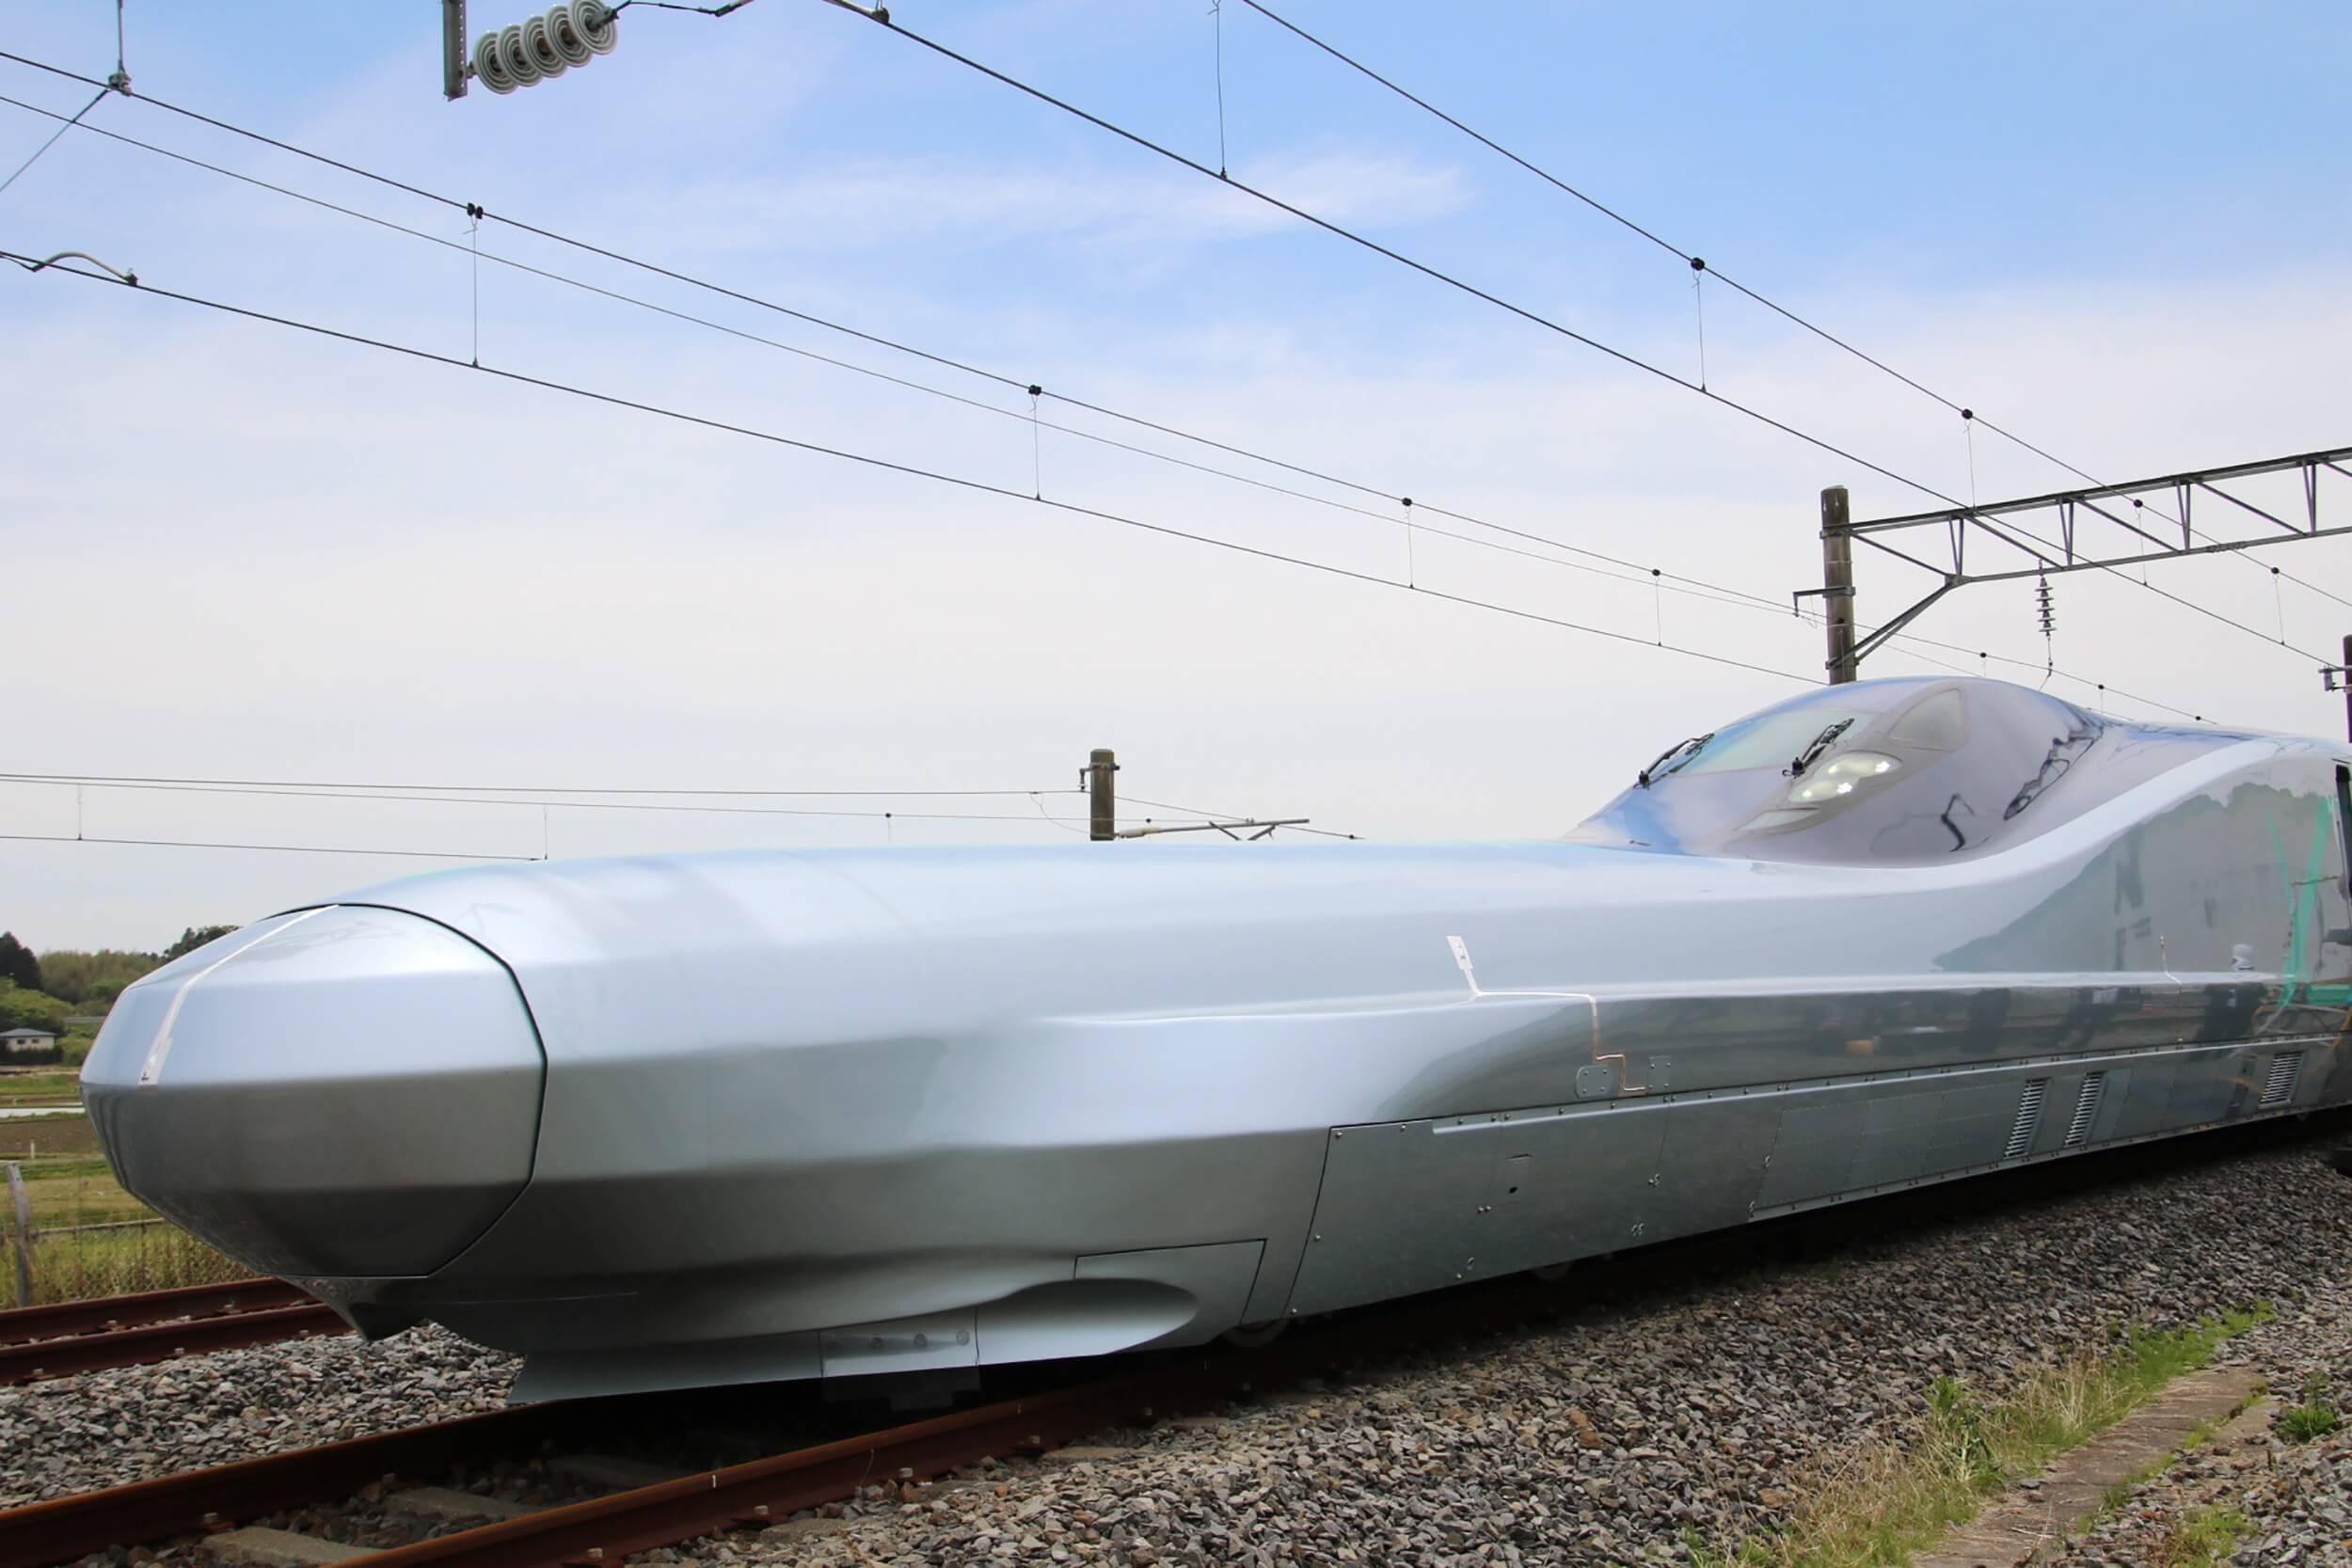 Prototyp japonského rychlovlaku Alfa-X brázdí železnice rychlostí 400 km/h